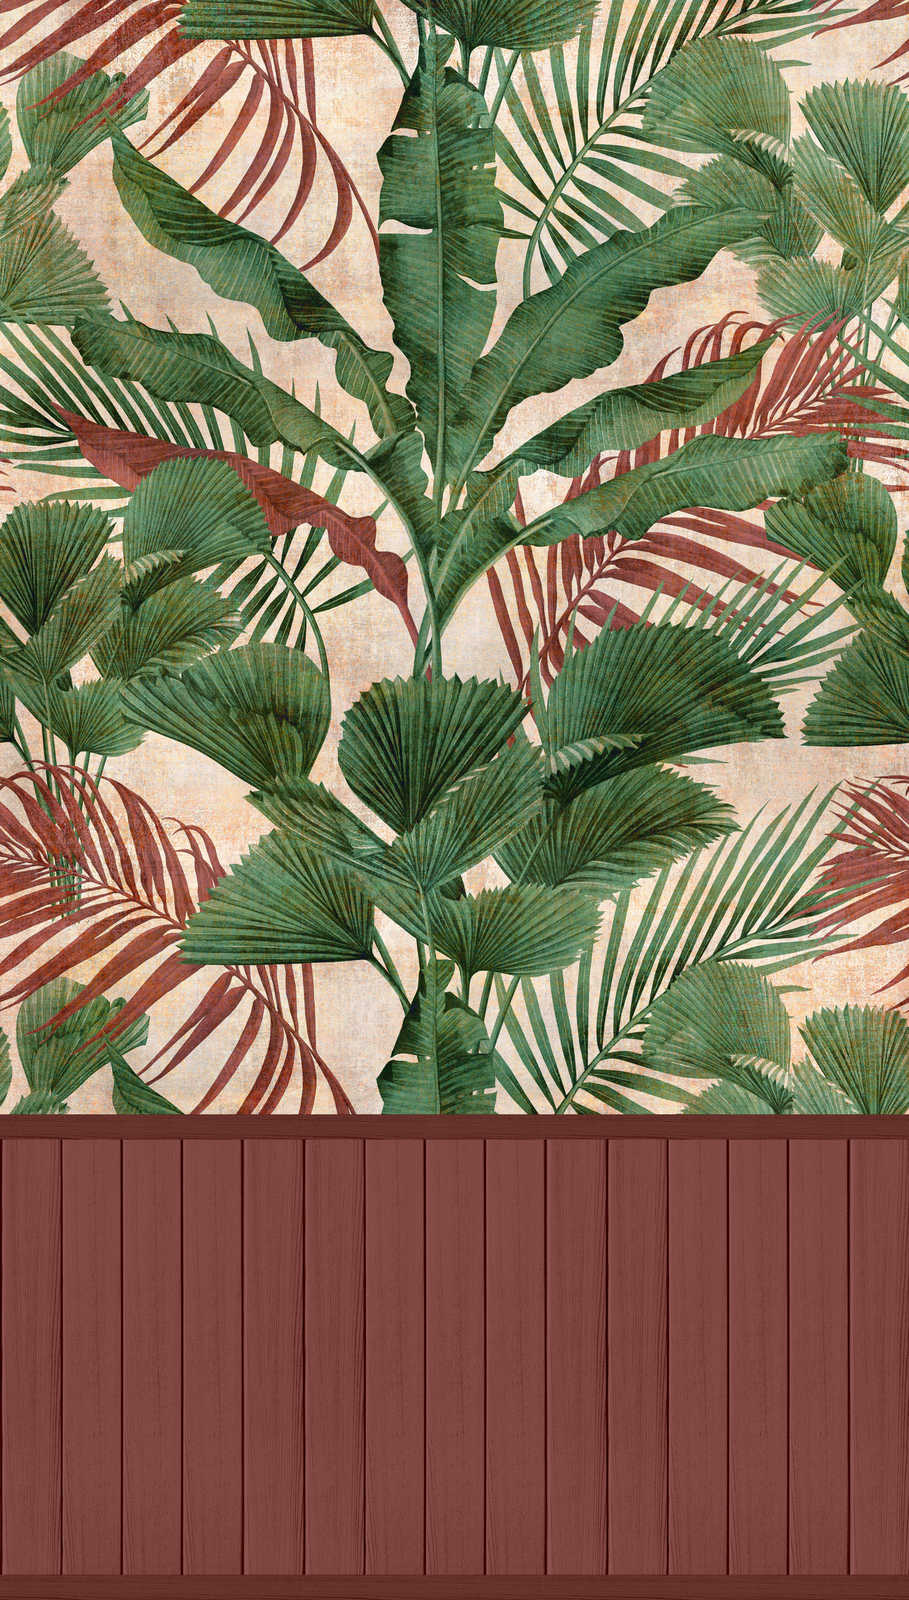             Onderlaag behang met vliesmotief, plintrand met houteffect en junglepatroon - rood, groen, beige
        